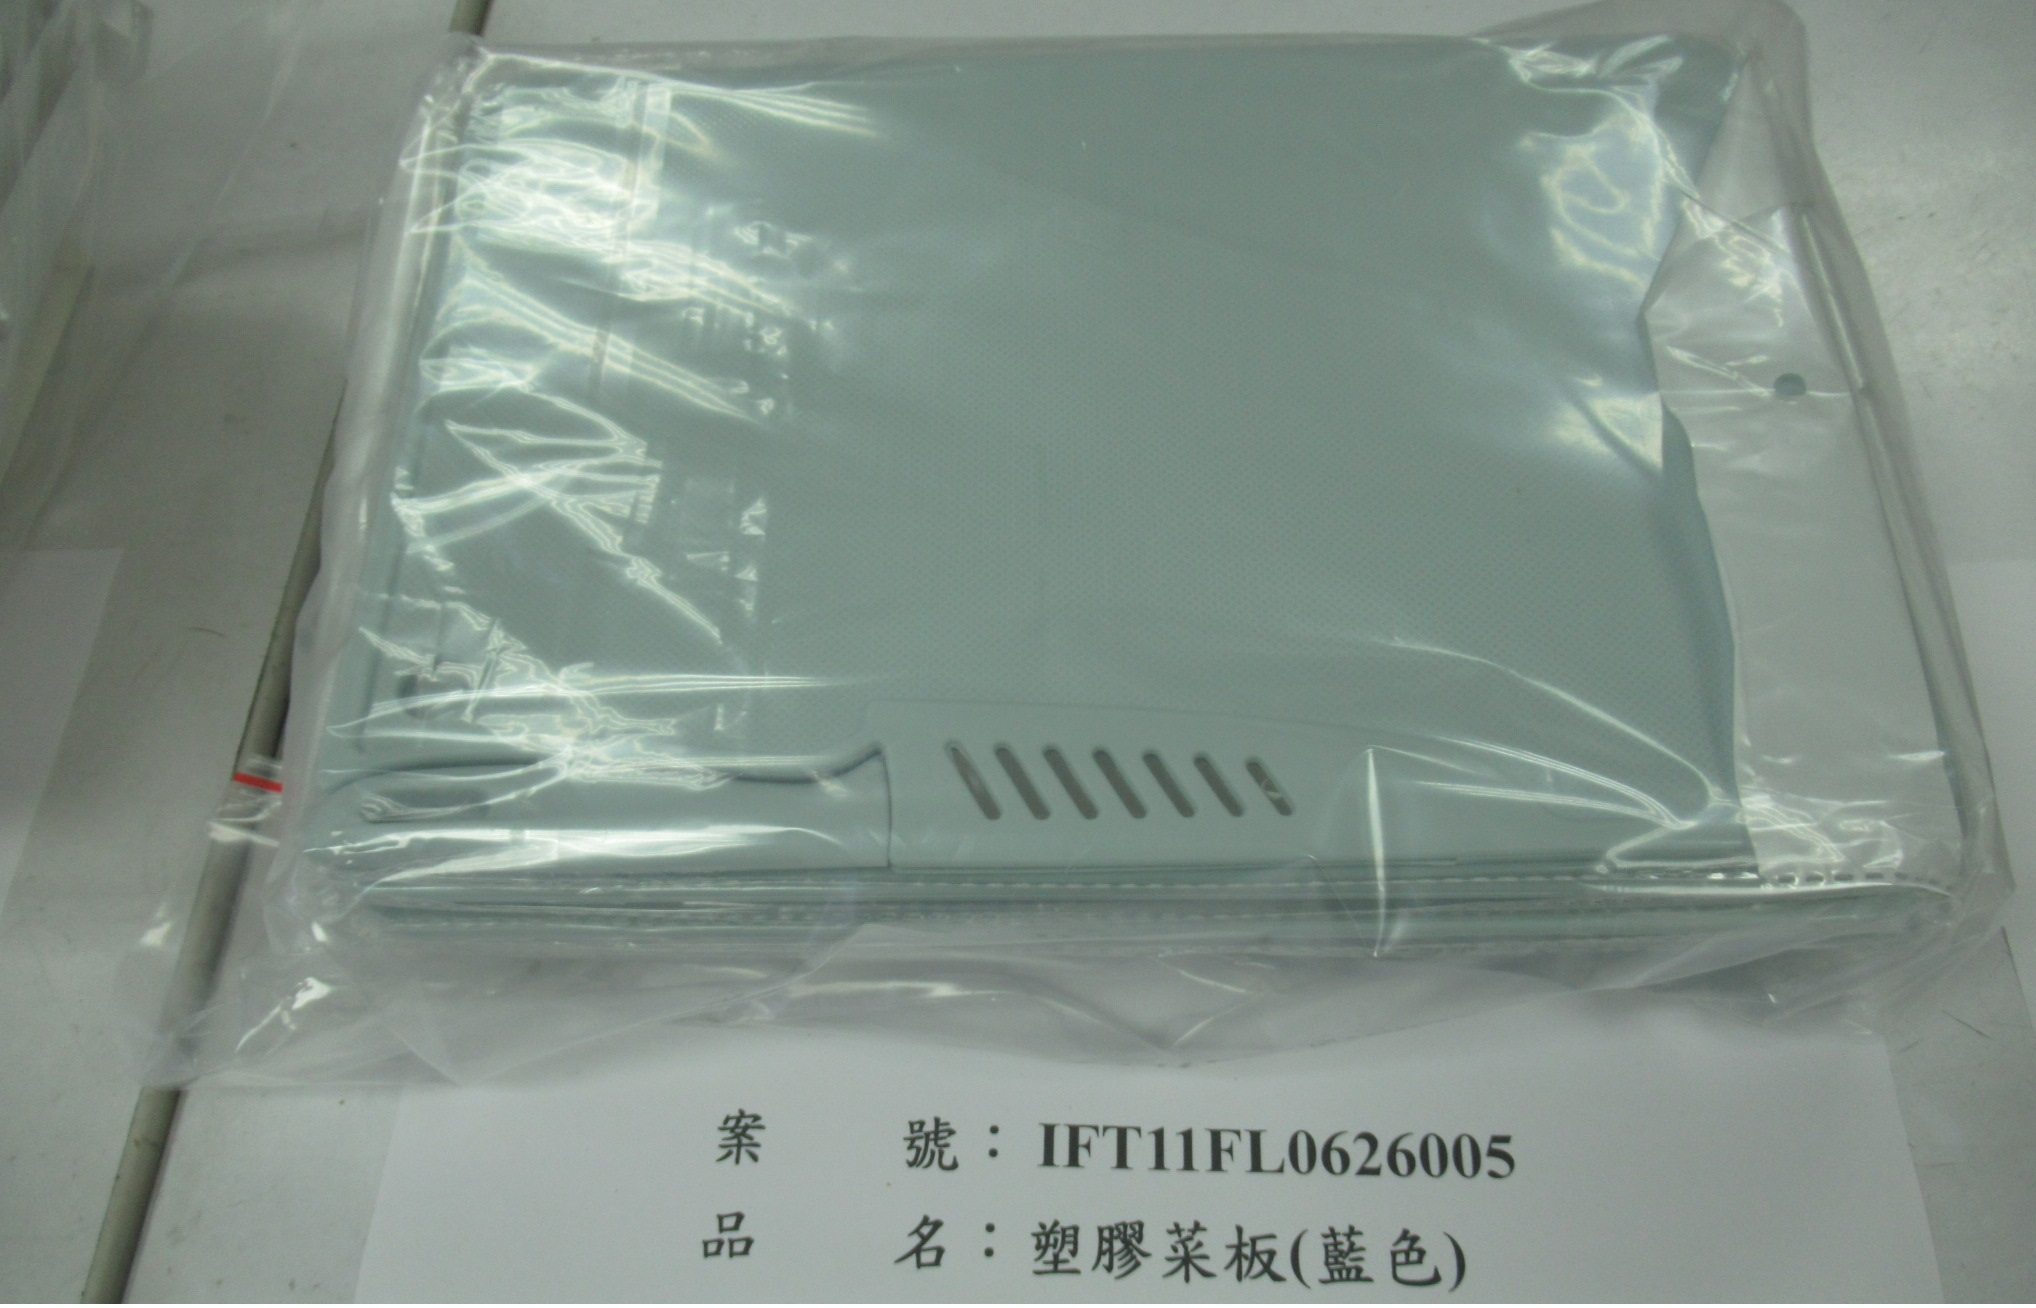 中國大陸出口「塑膠菜板(藍色)」容器具-溶出試驗不符規定